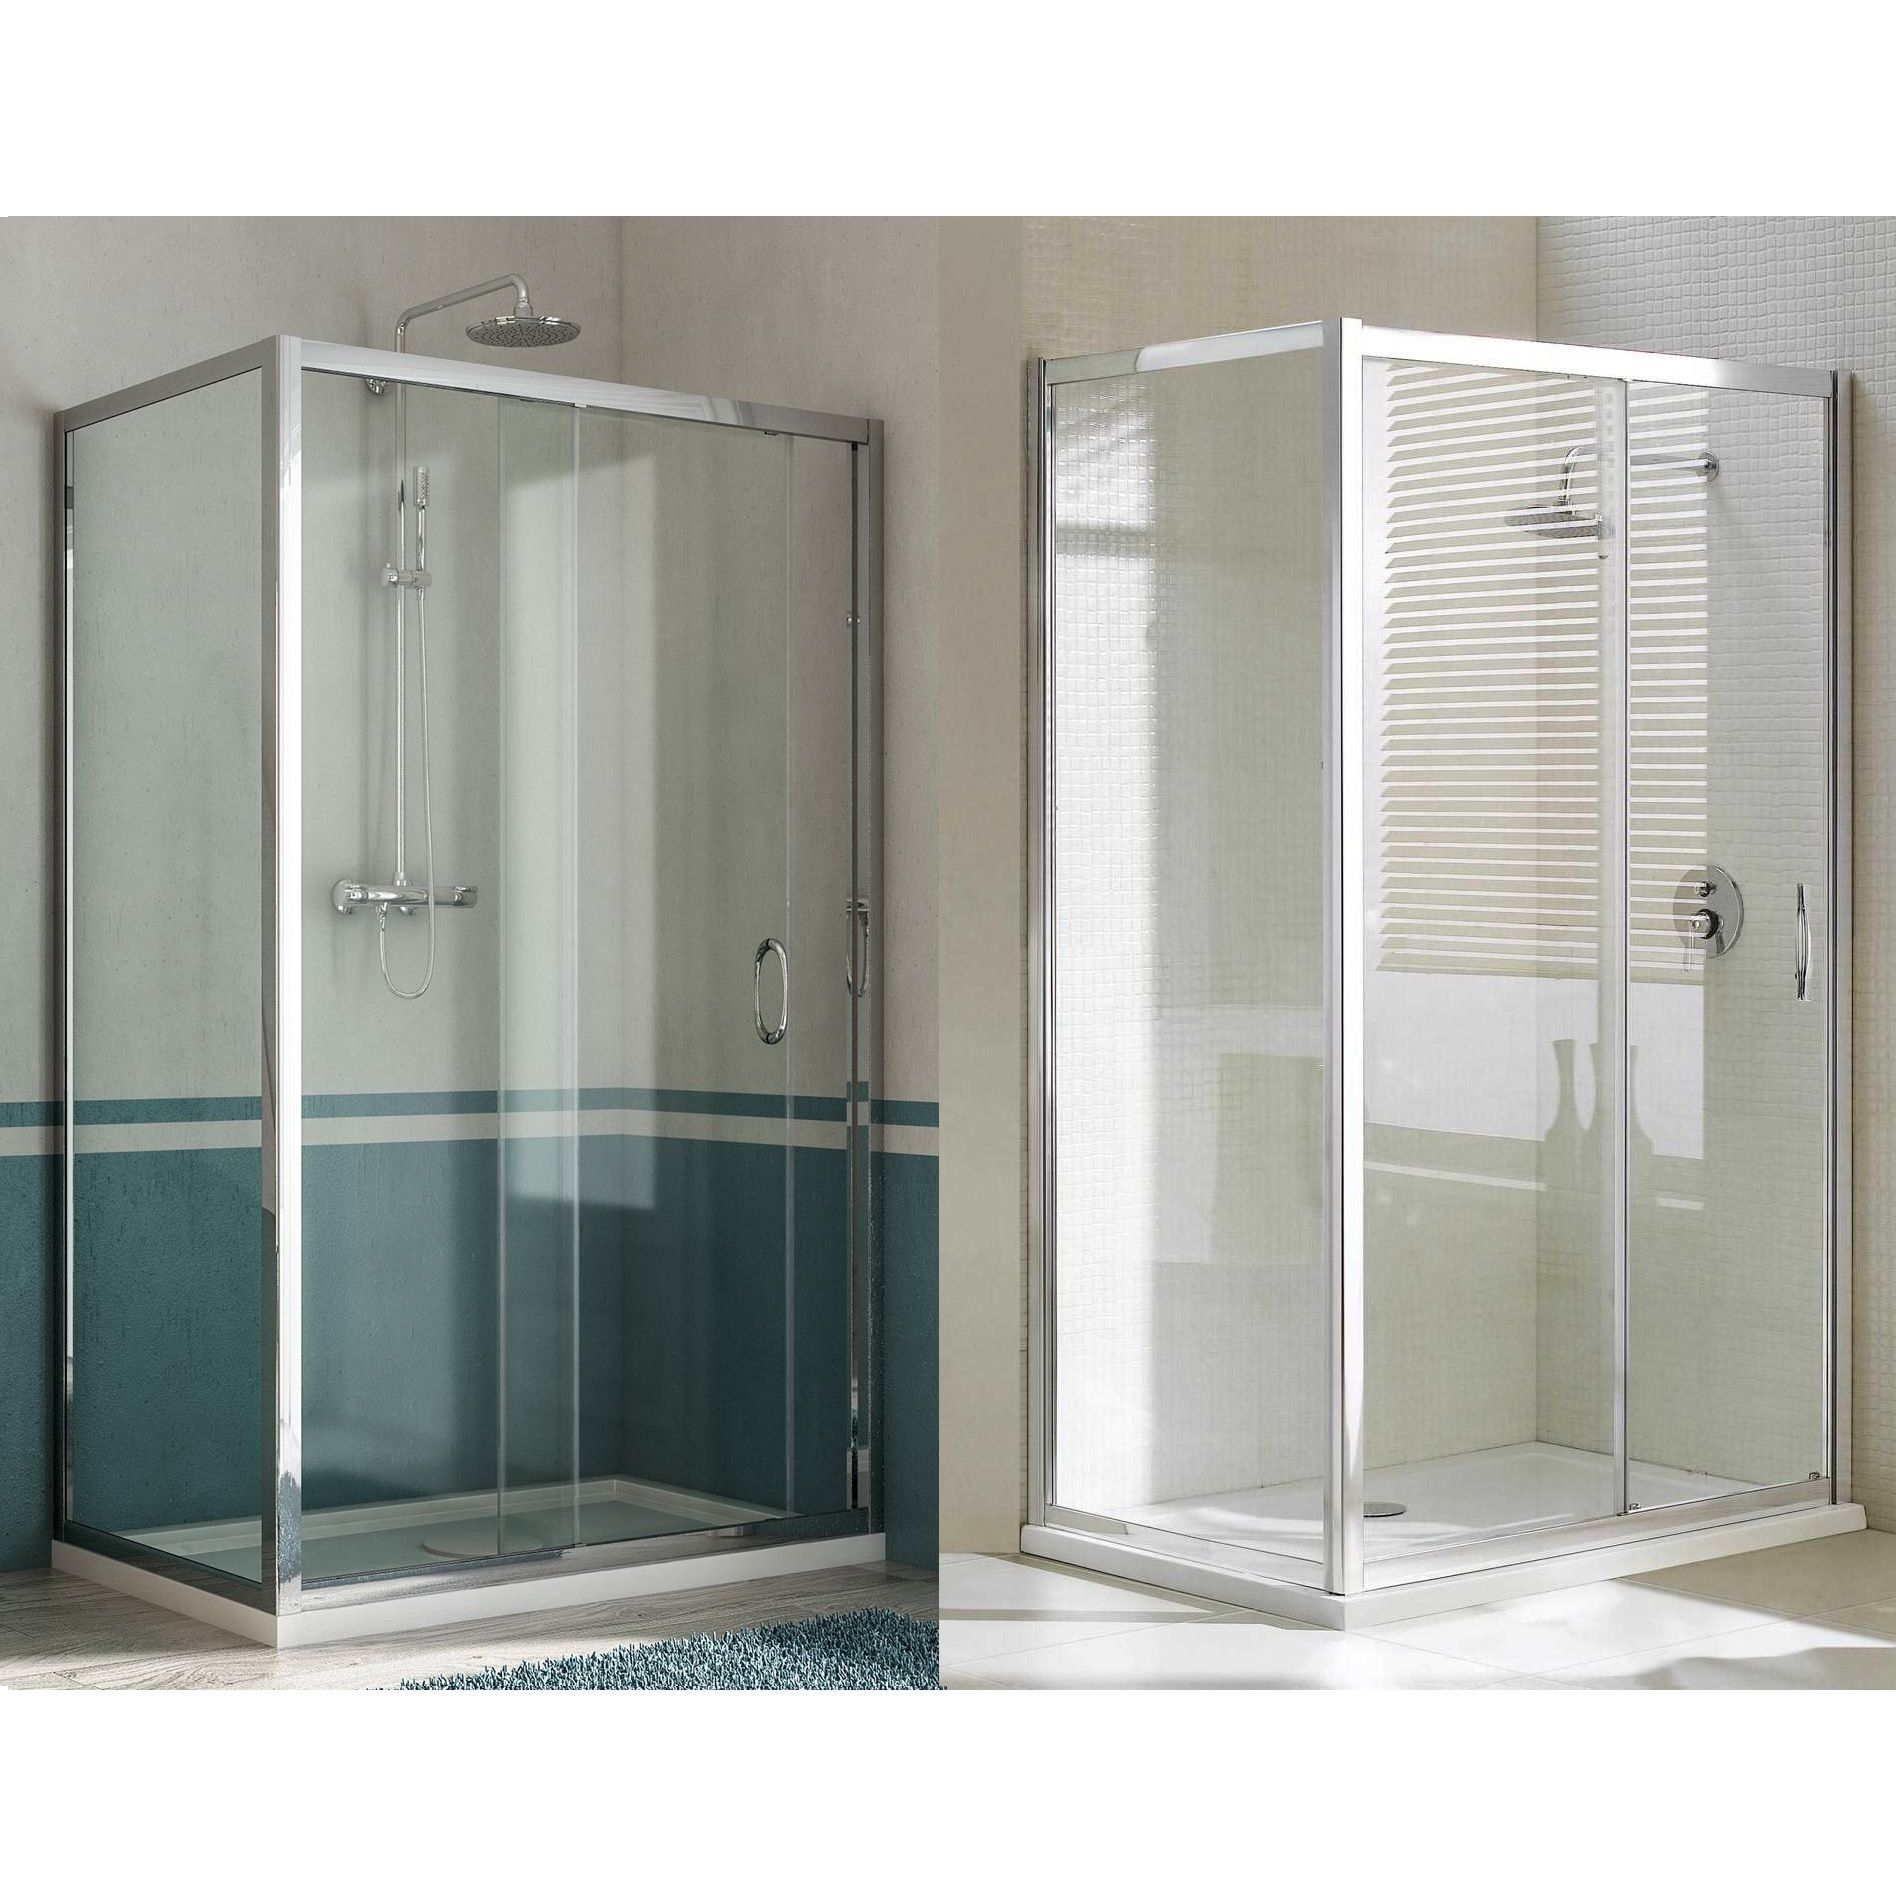 shower-enclosure-fixed-door-and-sliding-door-box040-1_1543570707_234